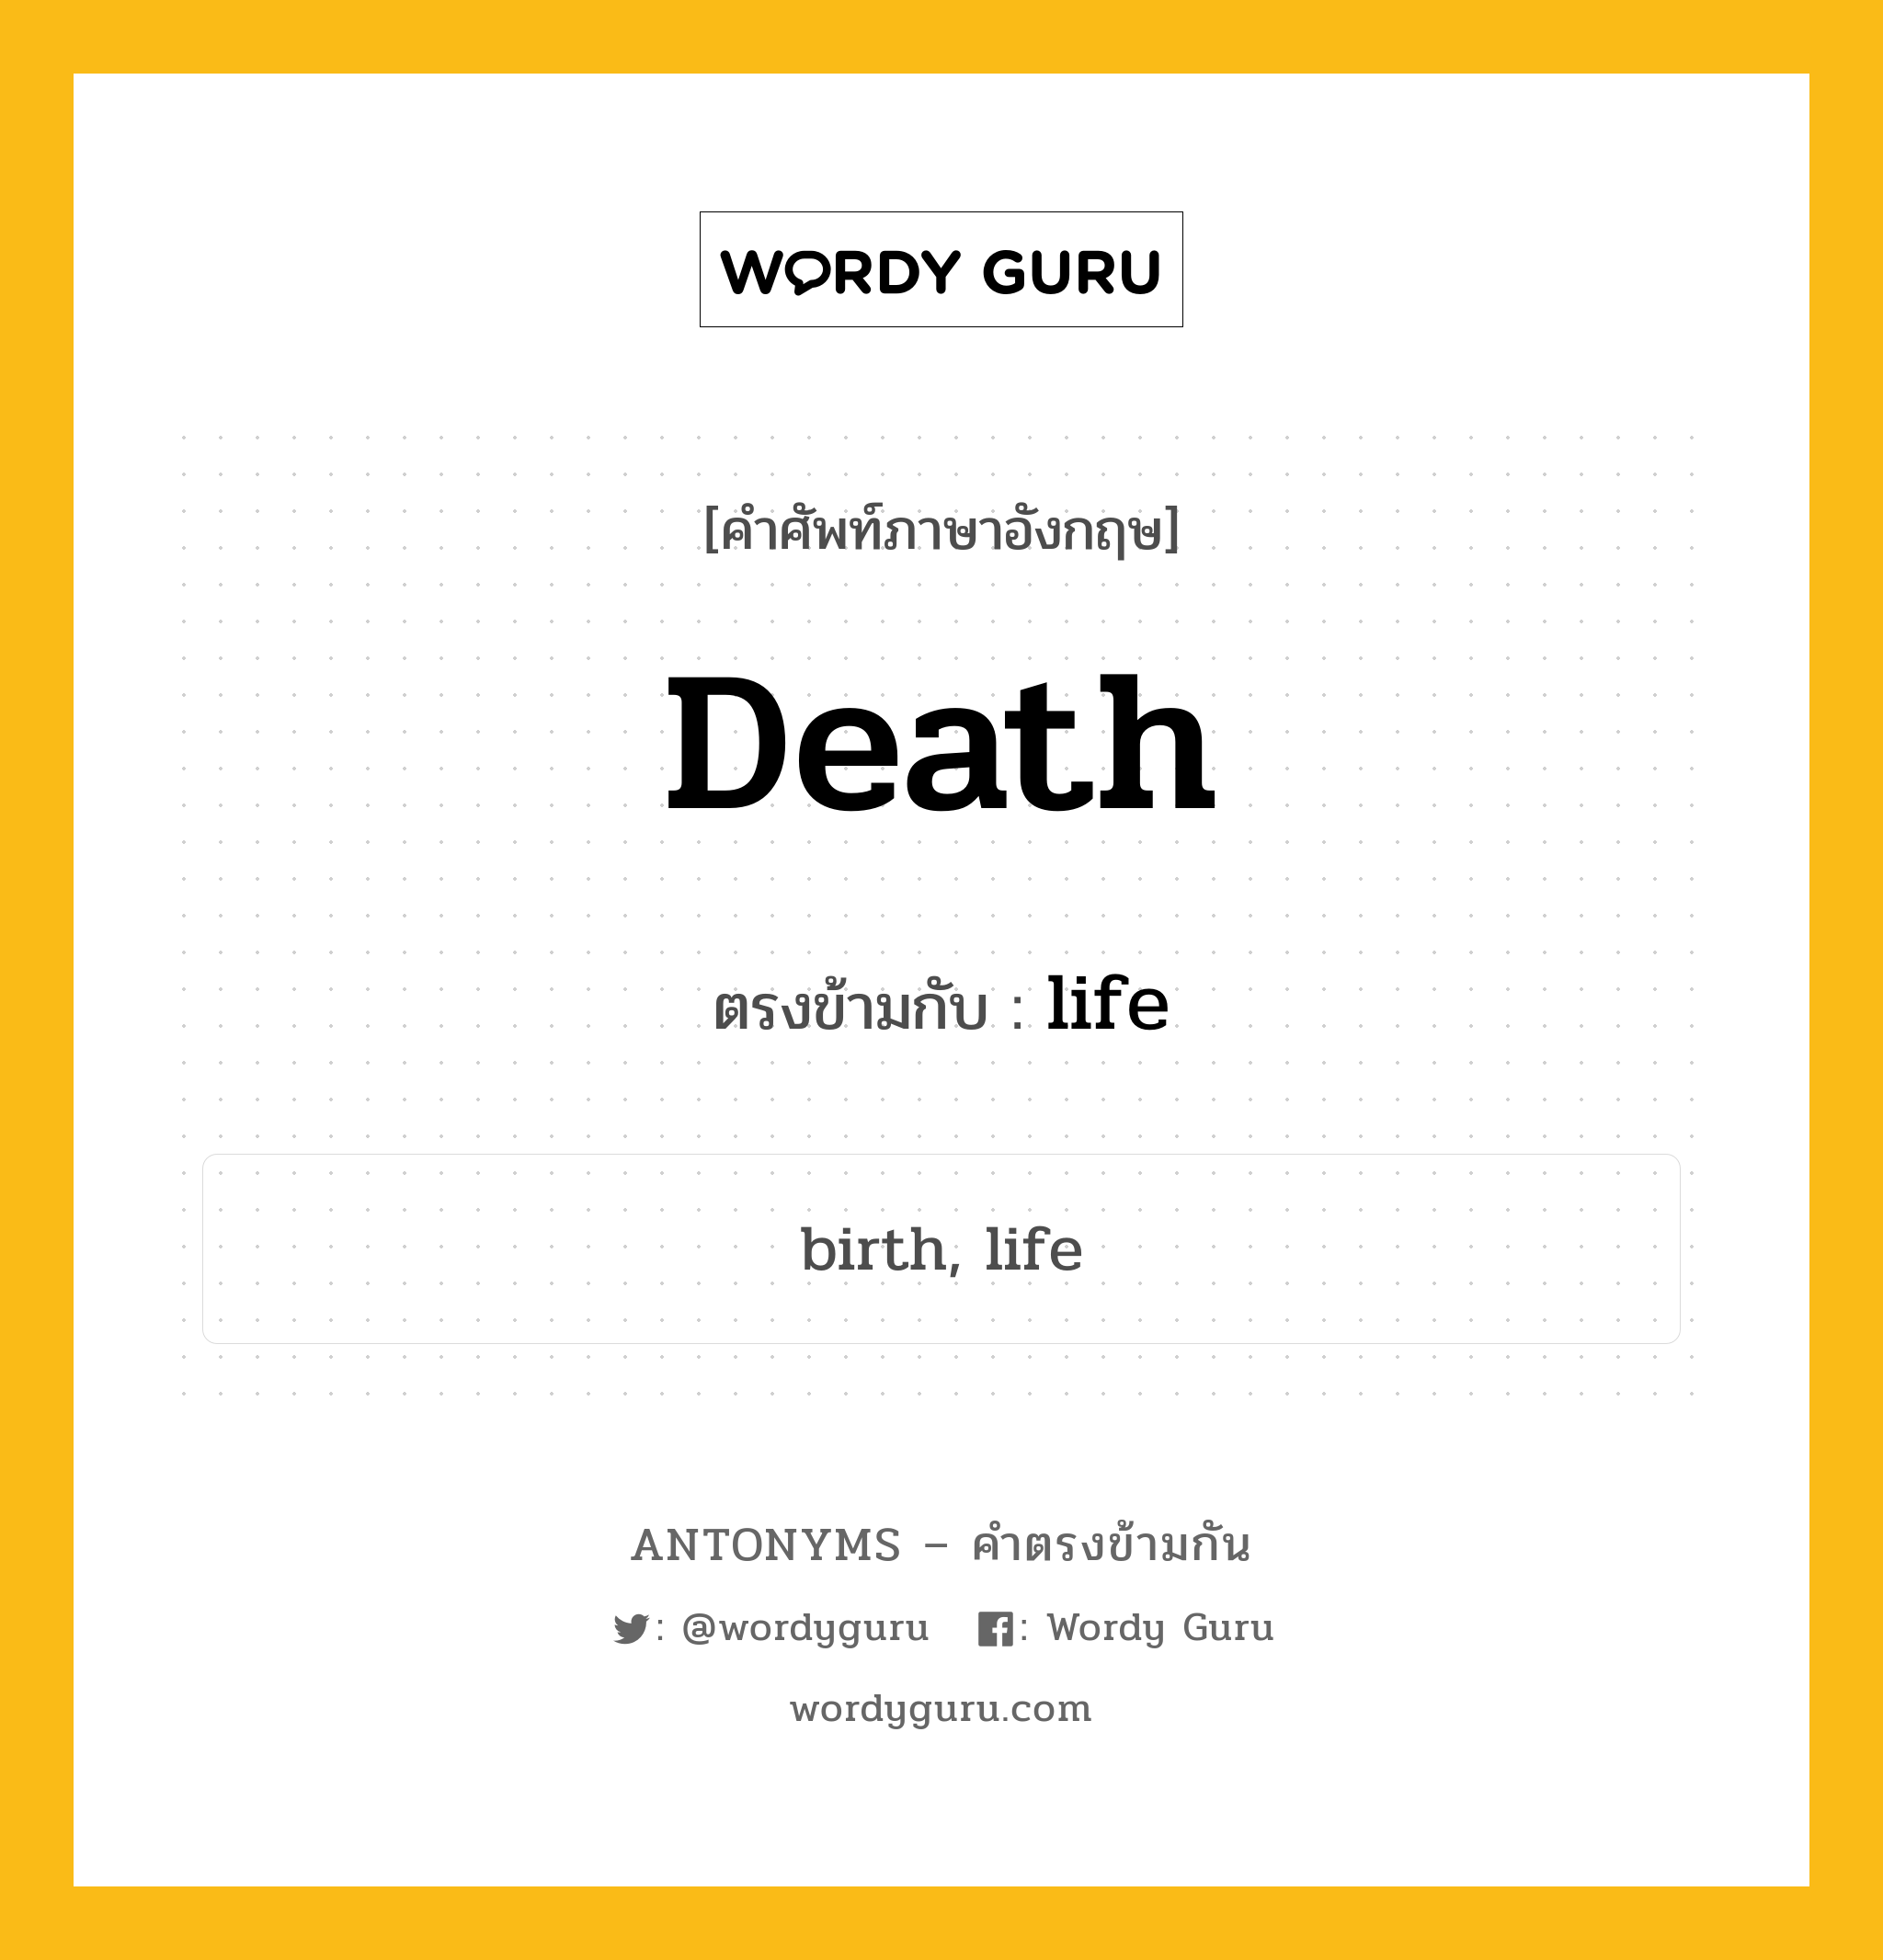 death เป็นคำตรงข้ามกับคำไหนบ้าง?, คำศัพท์ภาษาอังกฤษ death ตรงข้ามกับ life หมวด life